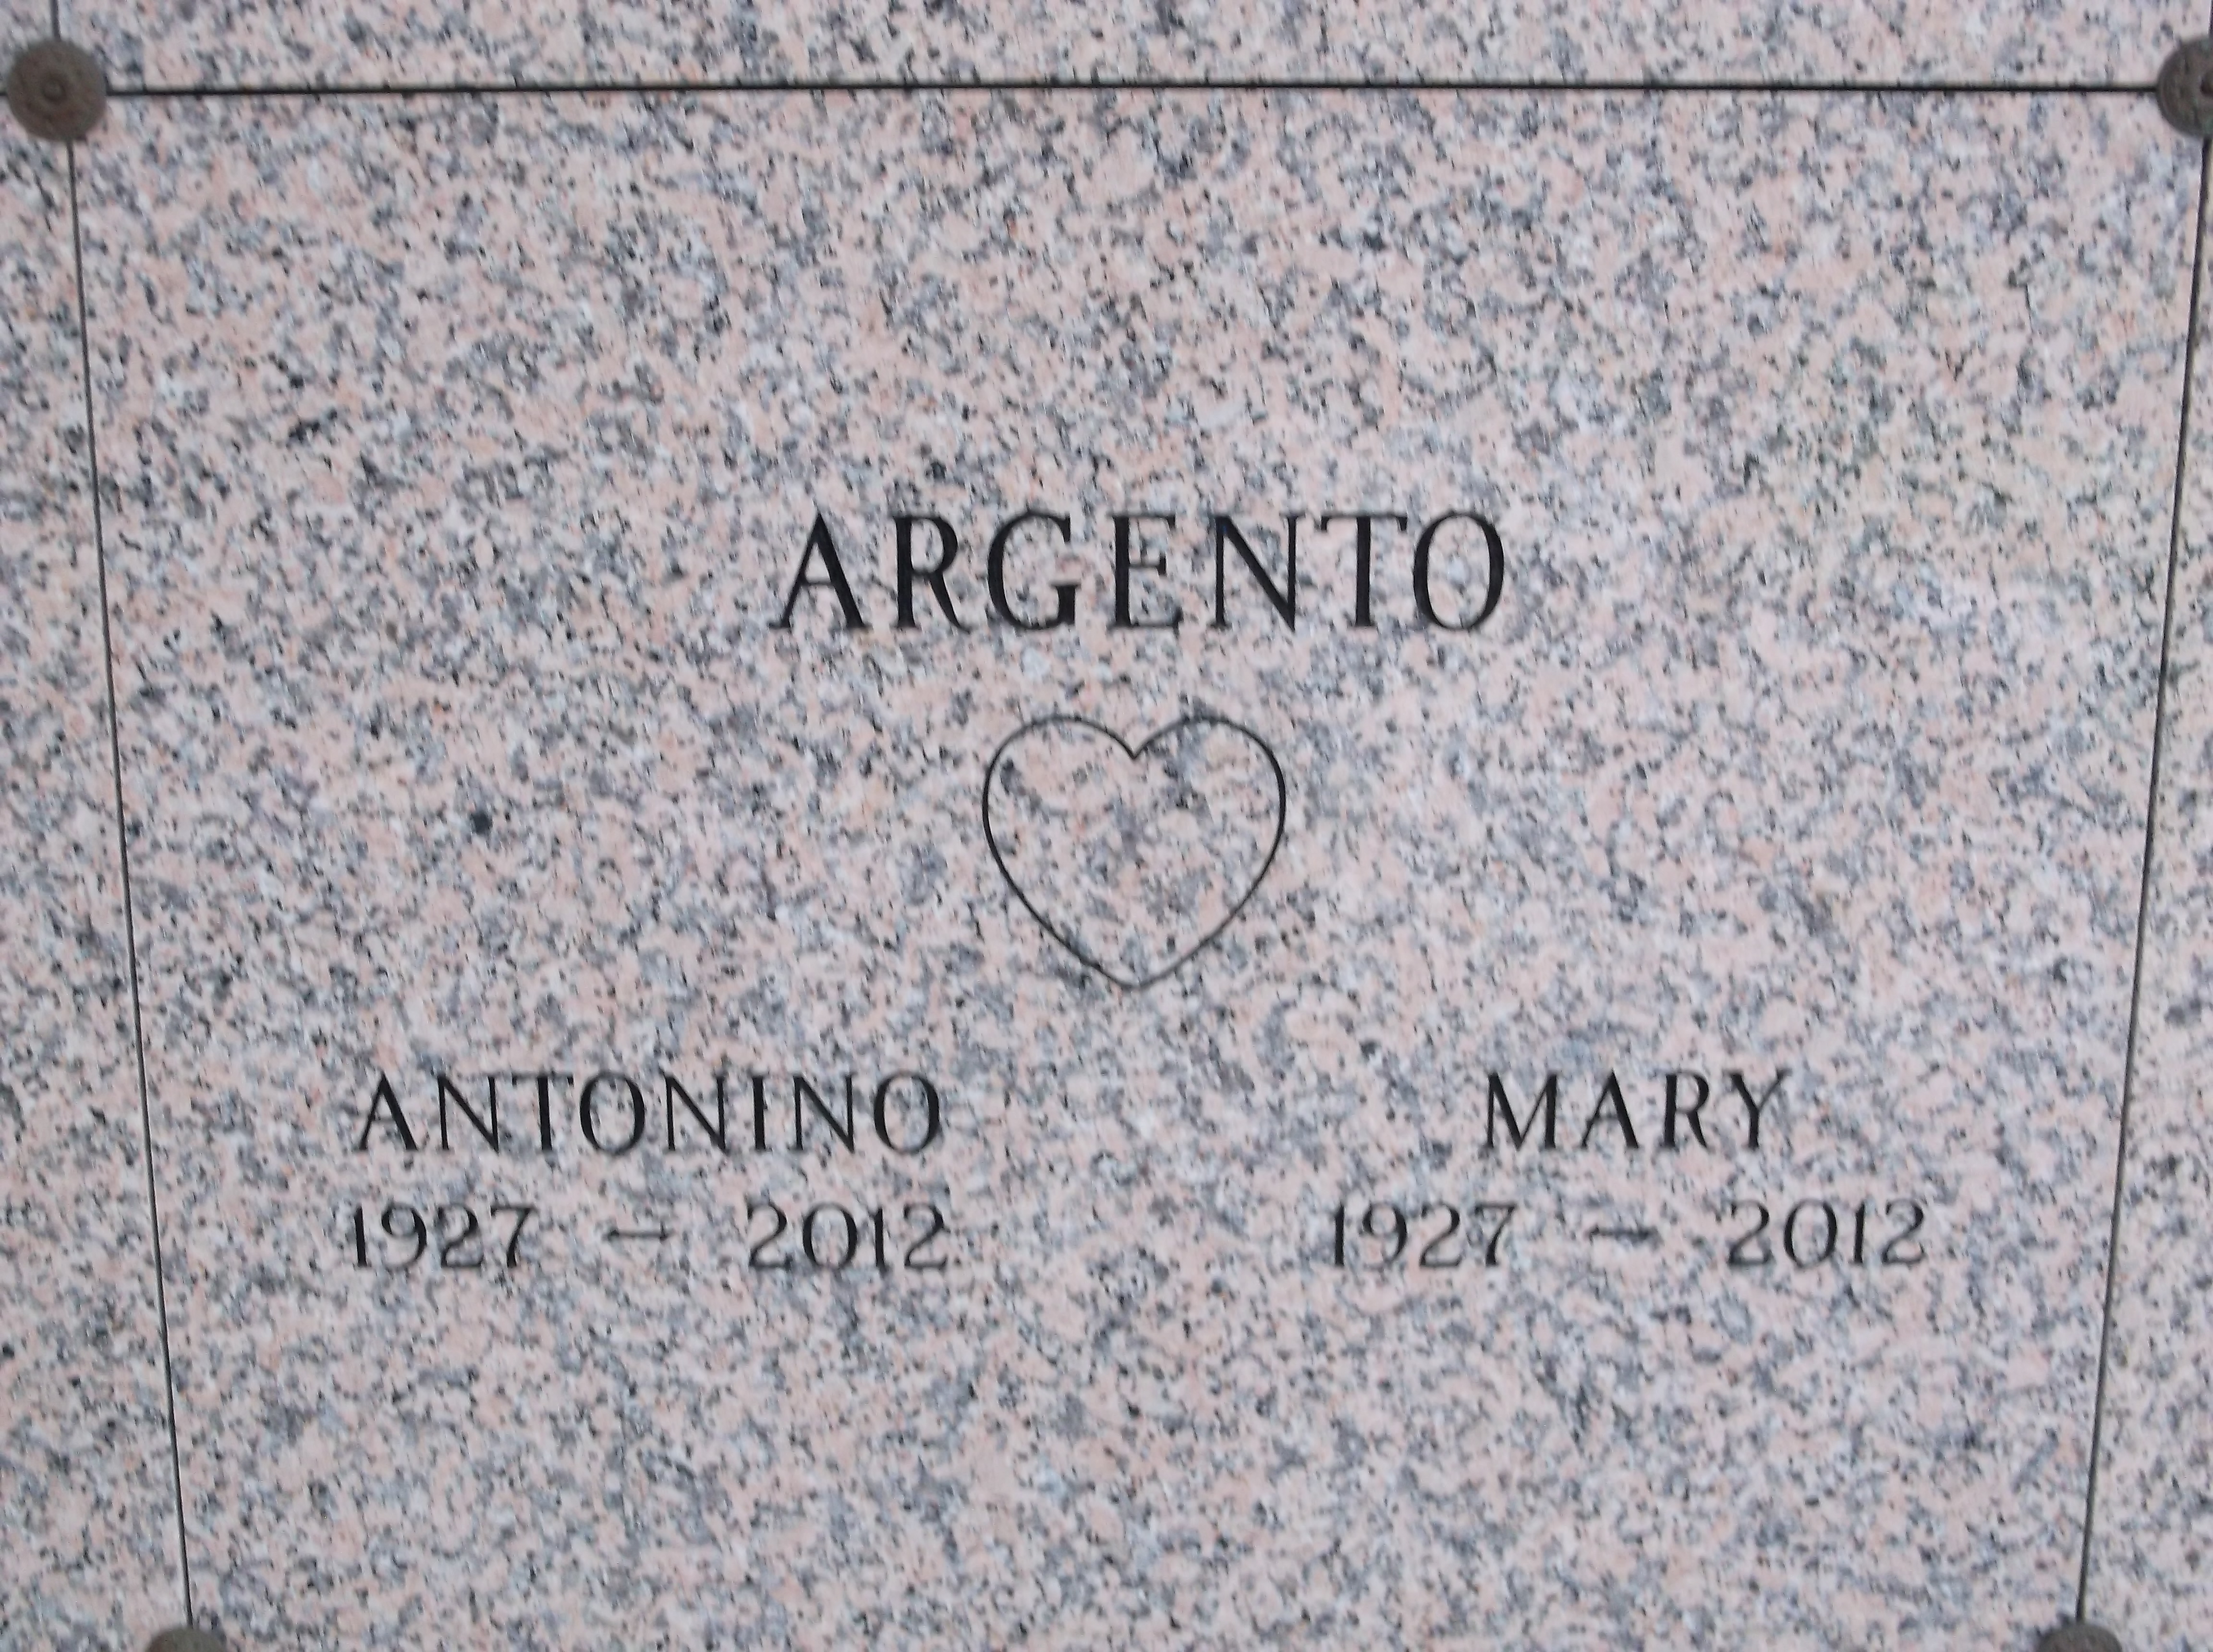 Mary Argento